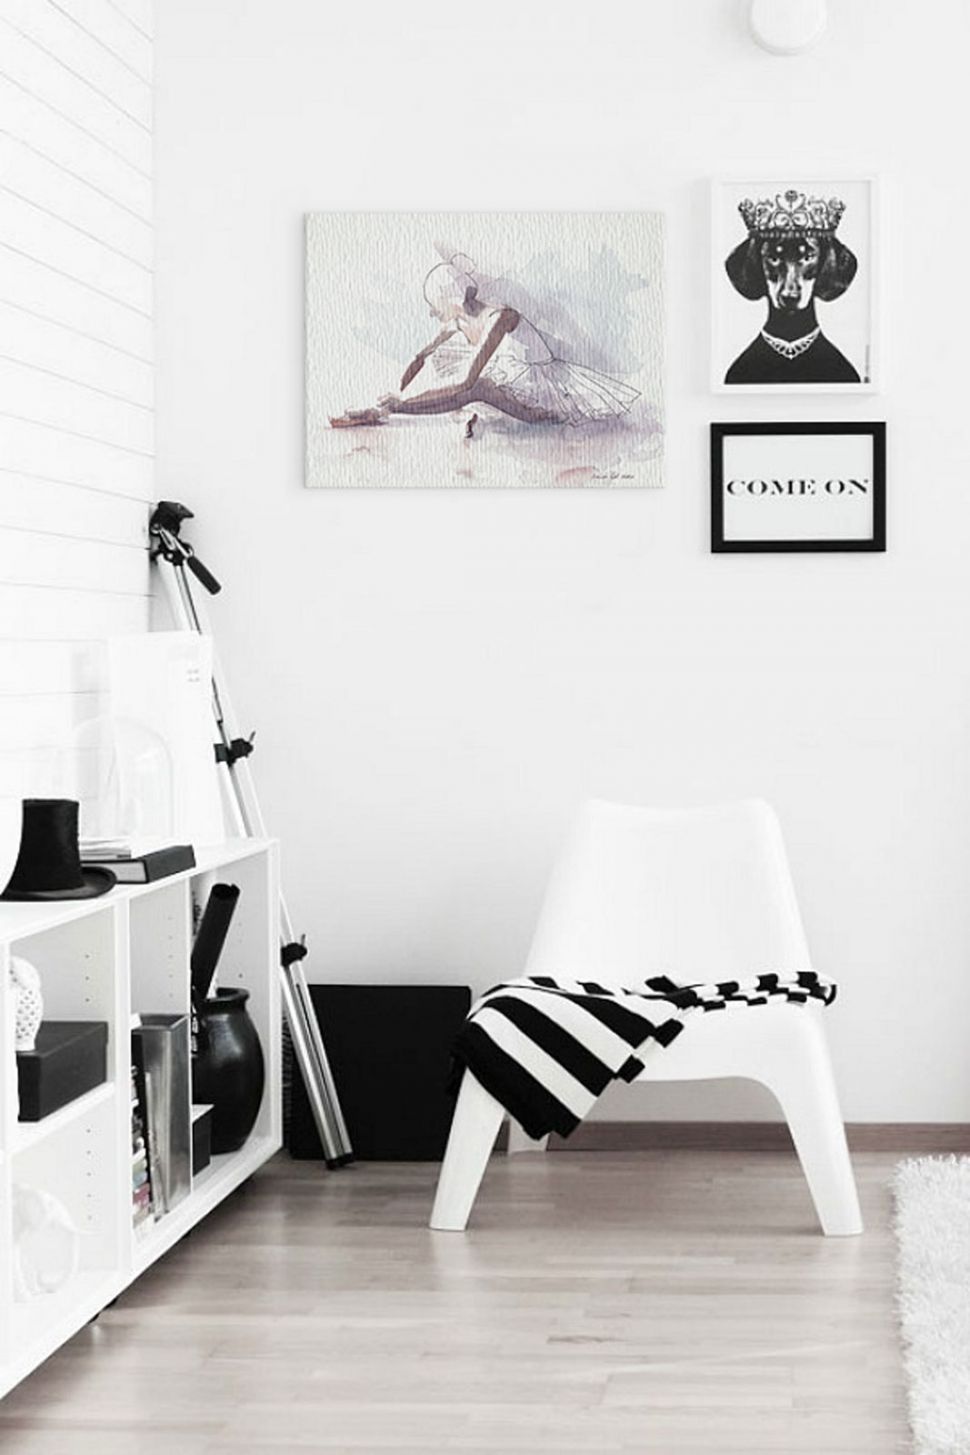 Obraz na płótnie z baletnicą powieszony w pokoju nad białym krzesłem obok obrazu z psem w koronie i obrazka z napisem come on